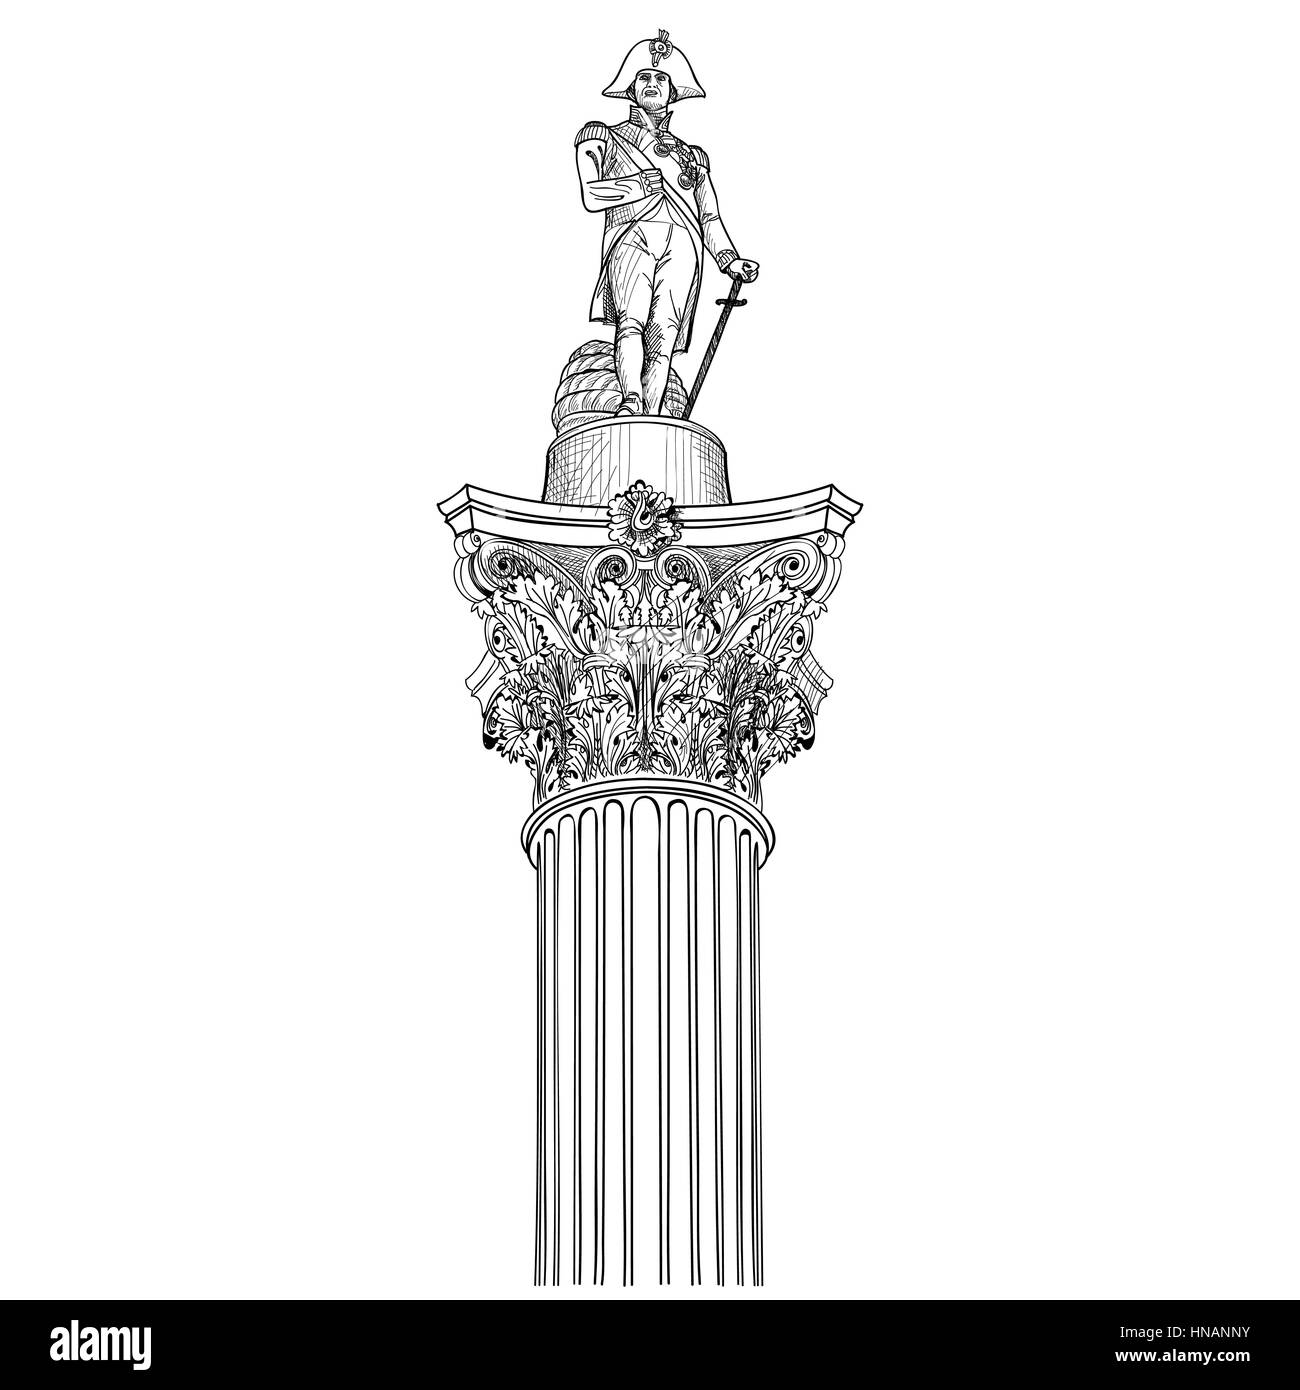 Nelson colounm isolato. l'ammiraglio nlson statua in Trafalgar Square a Londra, Inghilterra, Regno Unito. Illustrazione Vettoriale